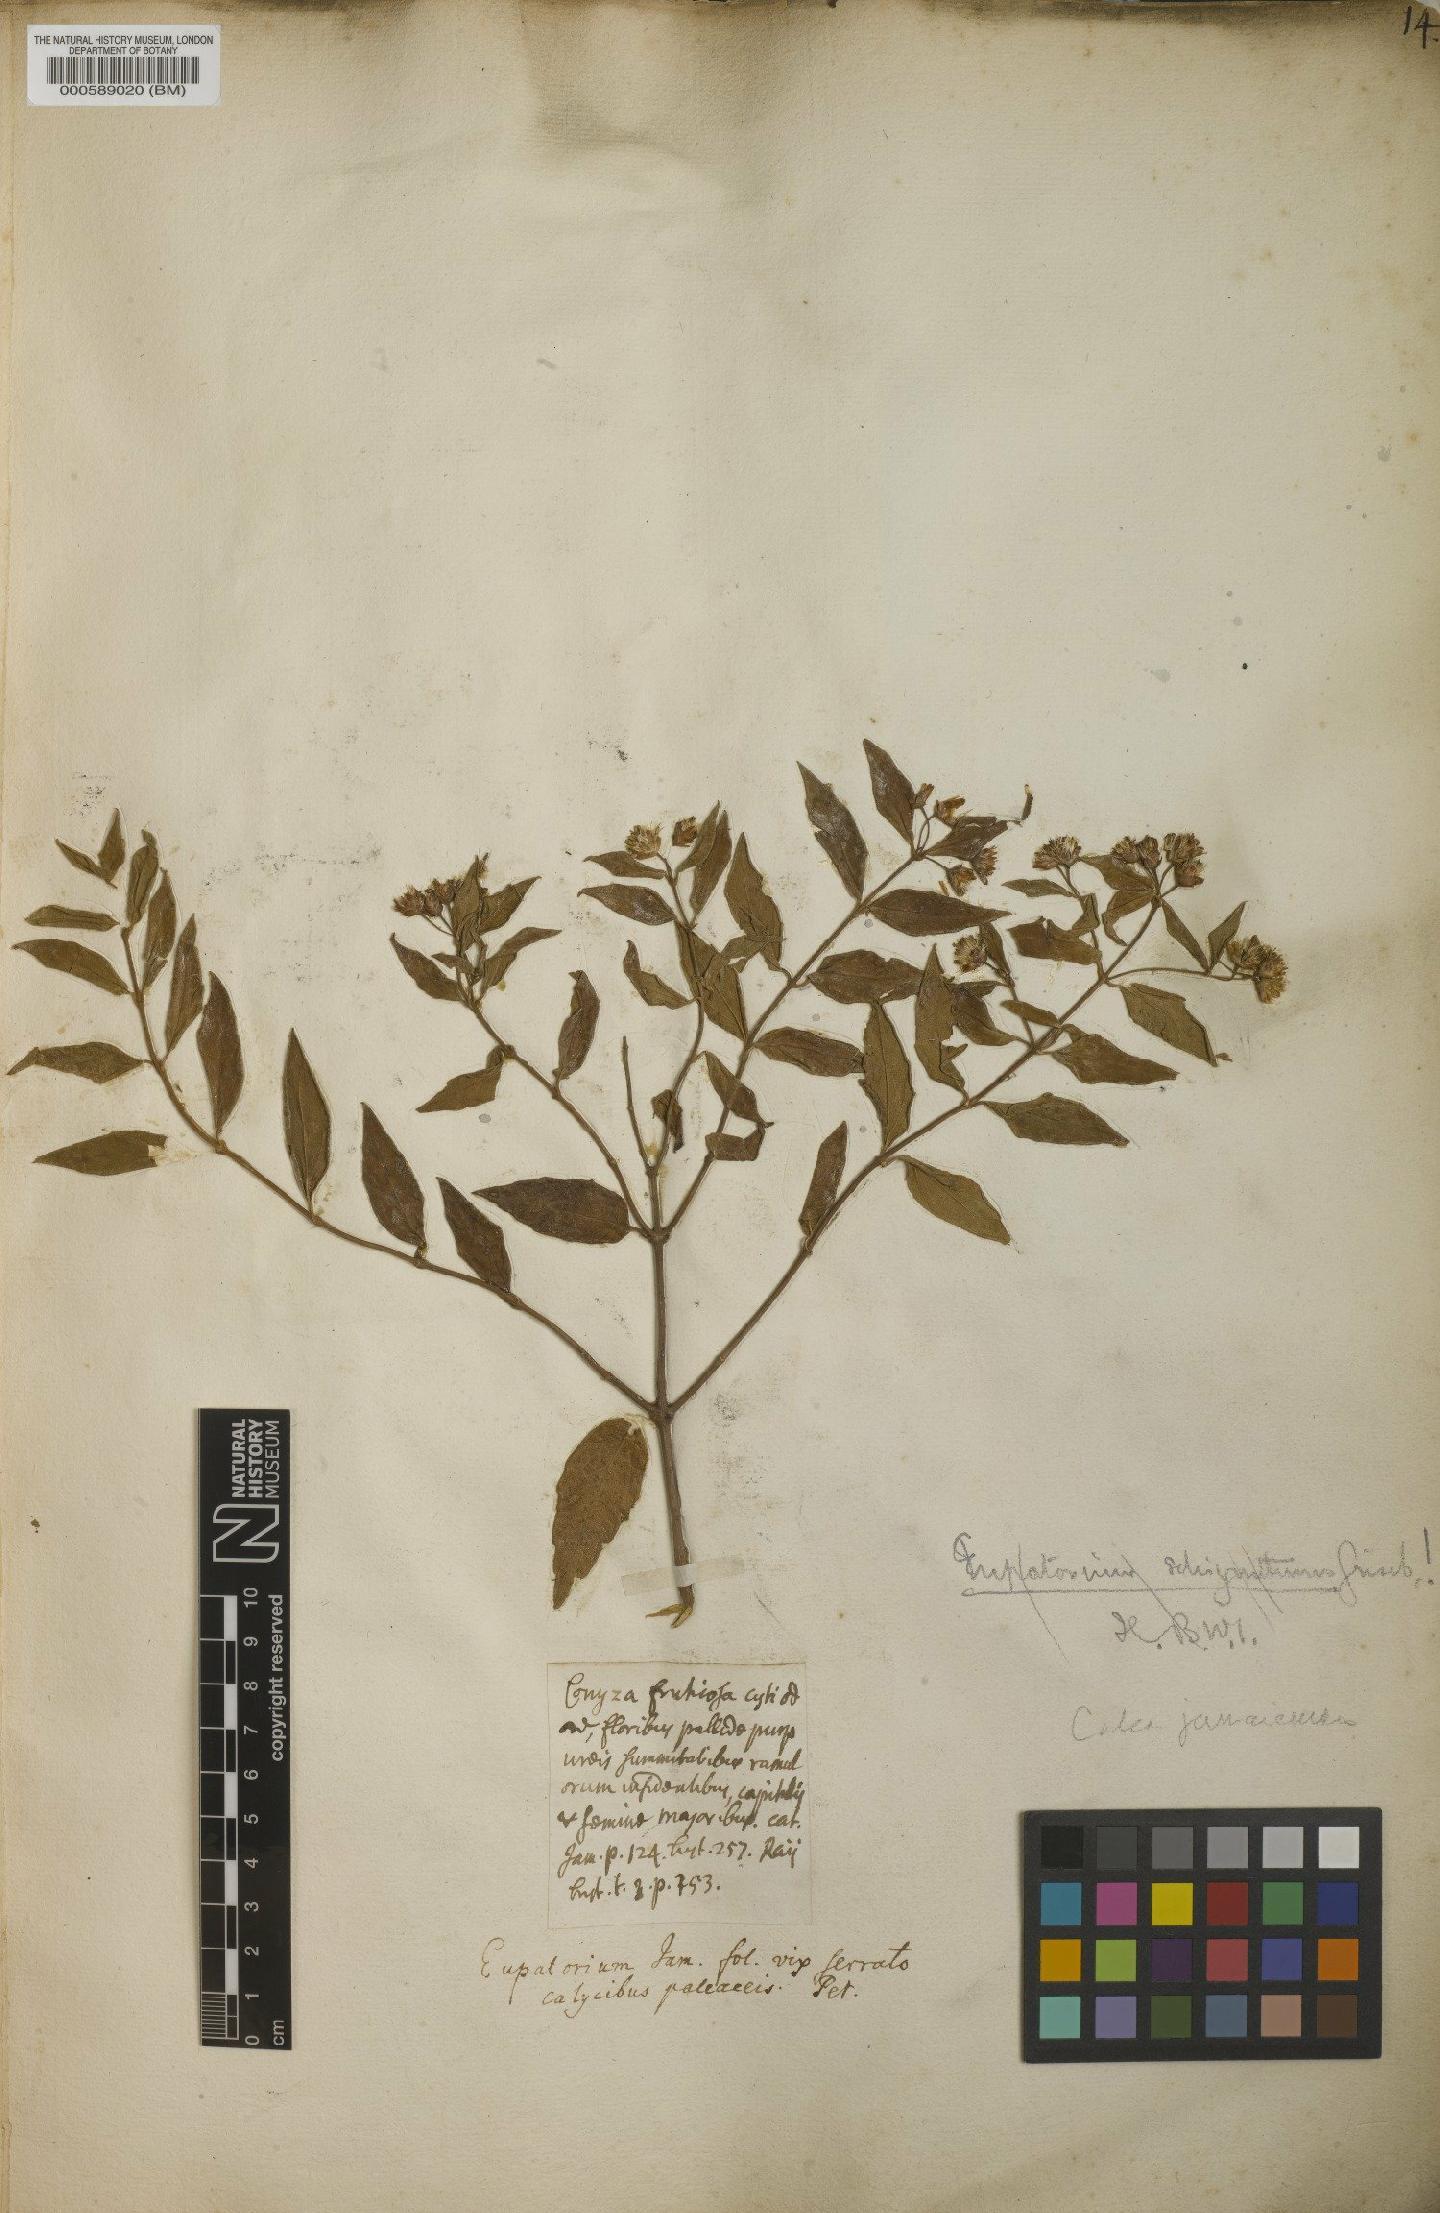 To NHMUK collection (Santolina jamaicensis L.; NHMUK:ecatalogue:4707144)